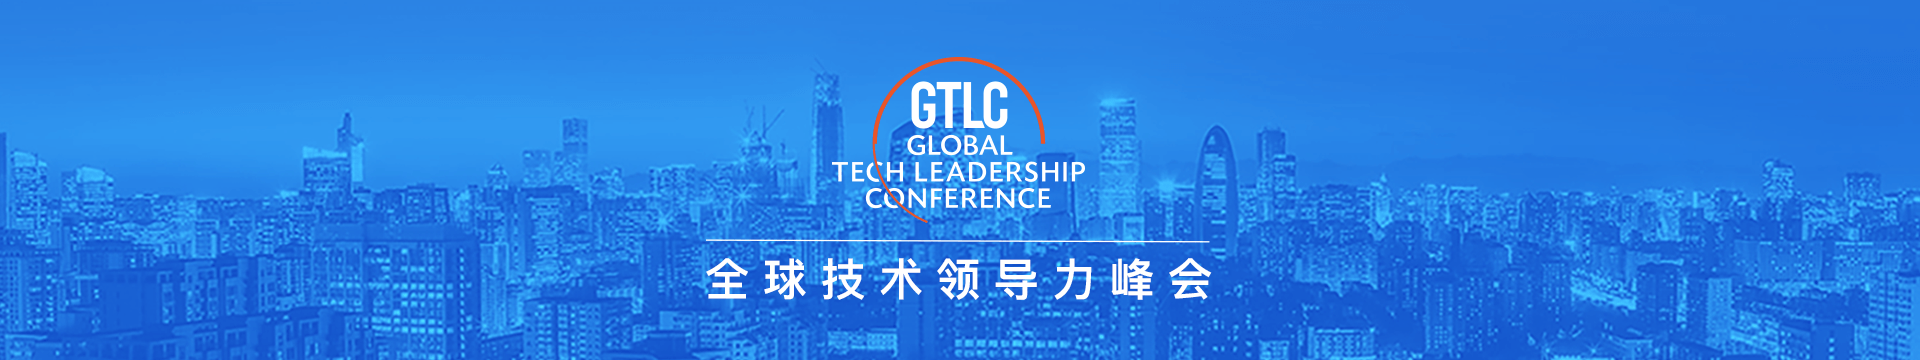 GTLC北京2020全球技术领导力峰会